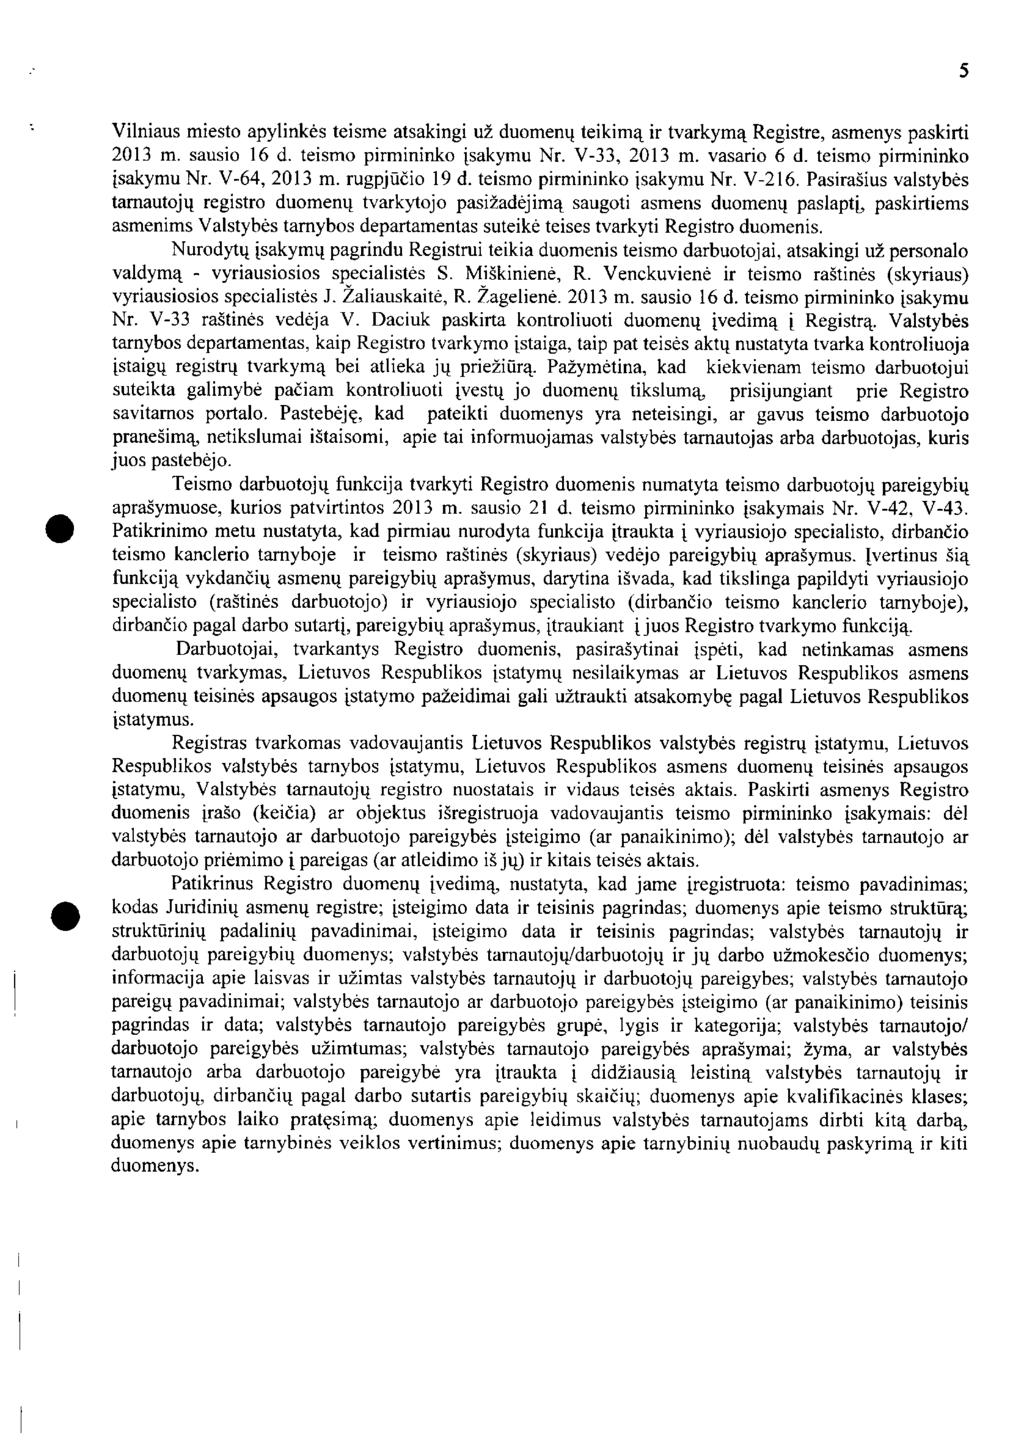 Vilniaus miesto apylinkės teisme atsakingi už duomenų teikimą ir tvarkymą Registre, asmenys paskirti 2013 m. sausio 16 d. teismo pirmininko įsakymu Nr. V-33, 2013 m. vasario 6 d.